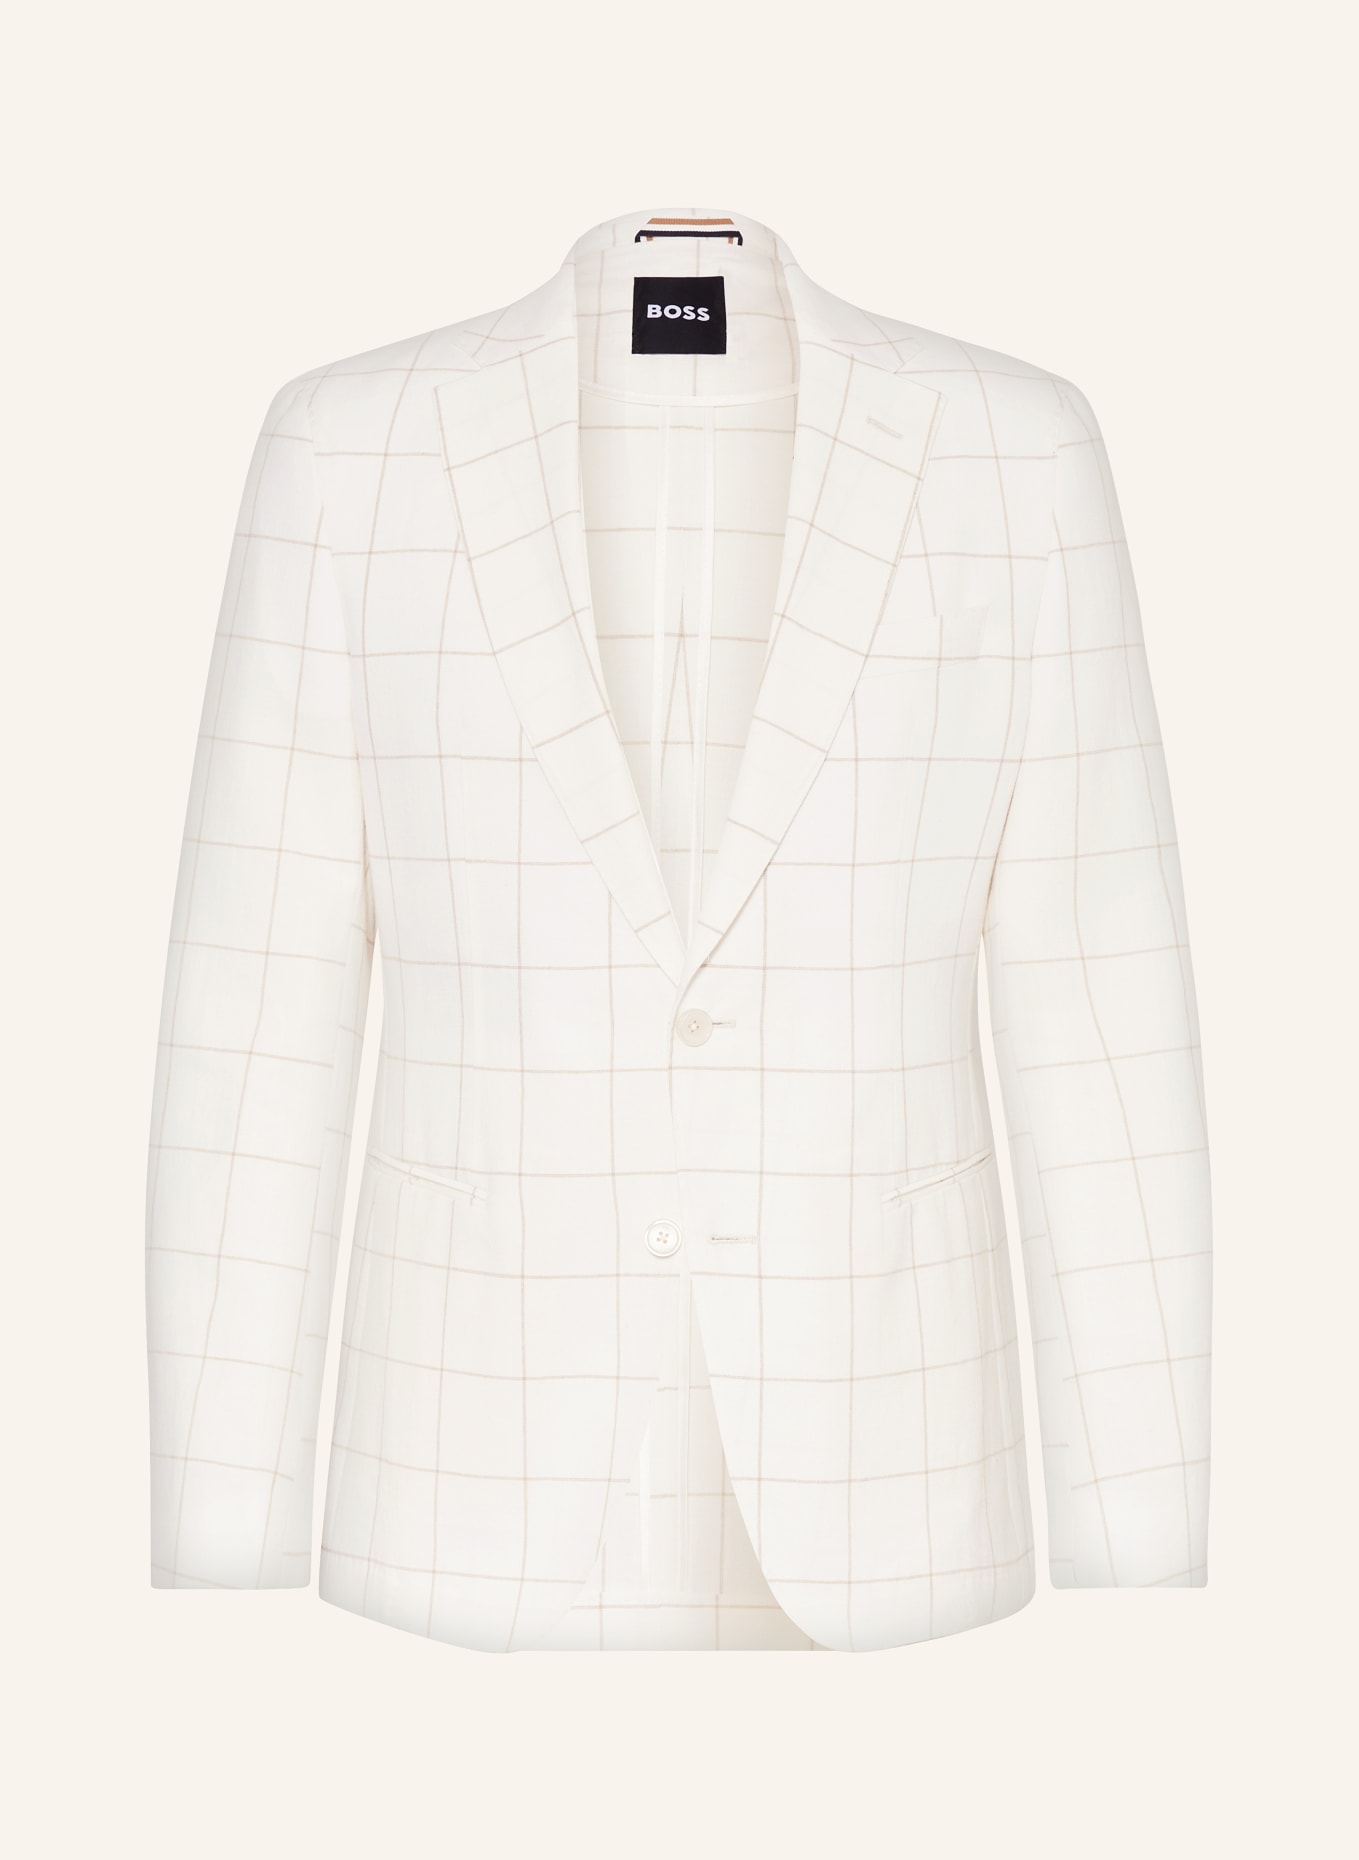 BOSS Anzugsakko HUGE Slim Fit, Farbe: 100 WHITE (Bild 1)